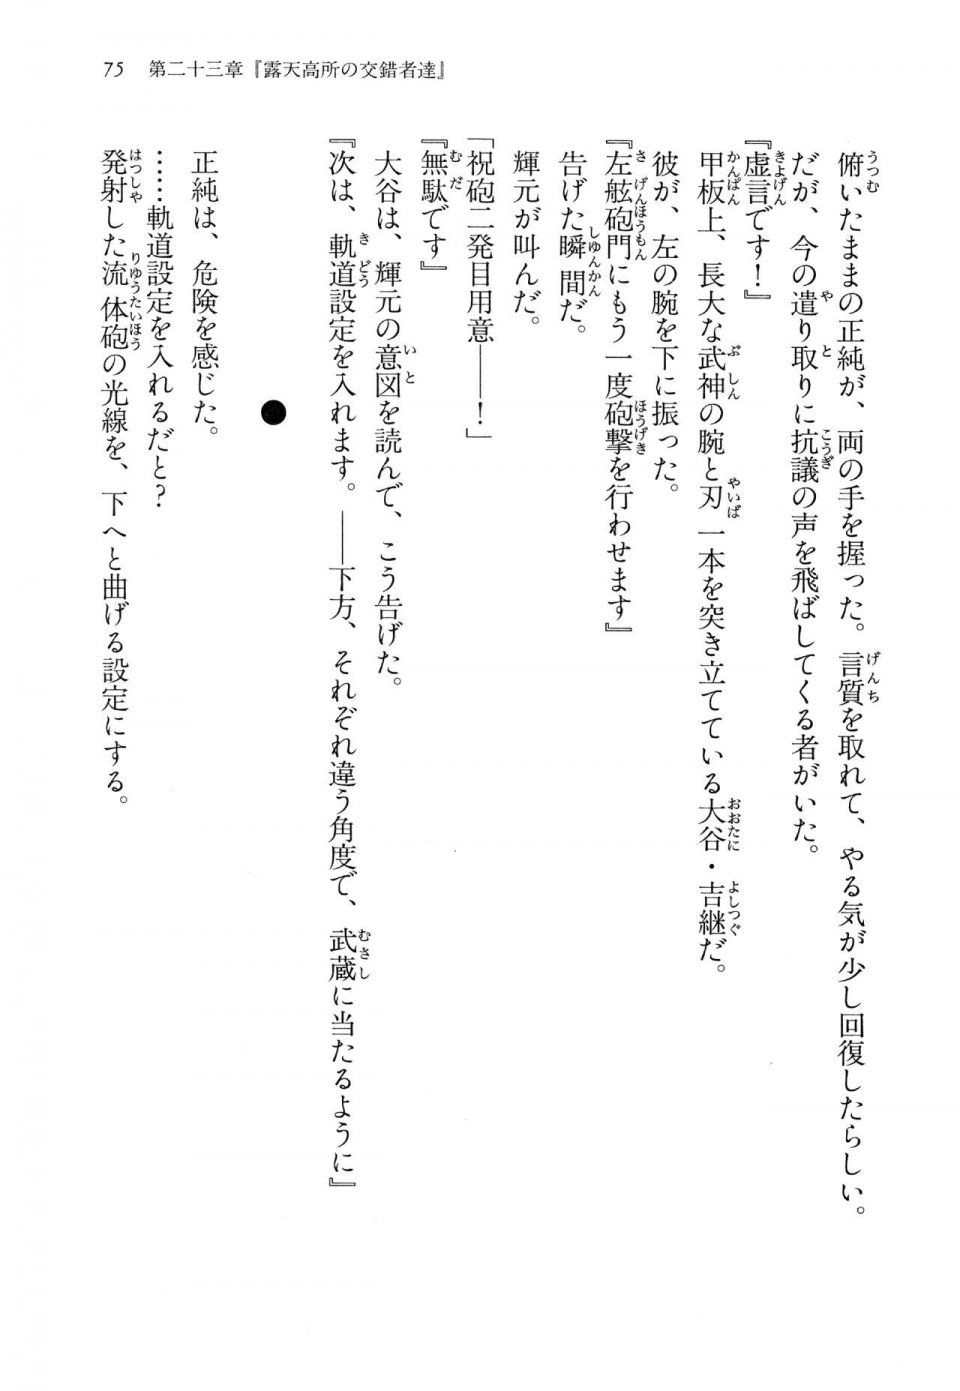 Kyoukai Senjou no Horizon LN Vol 14(6B) - Photo #75